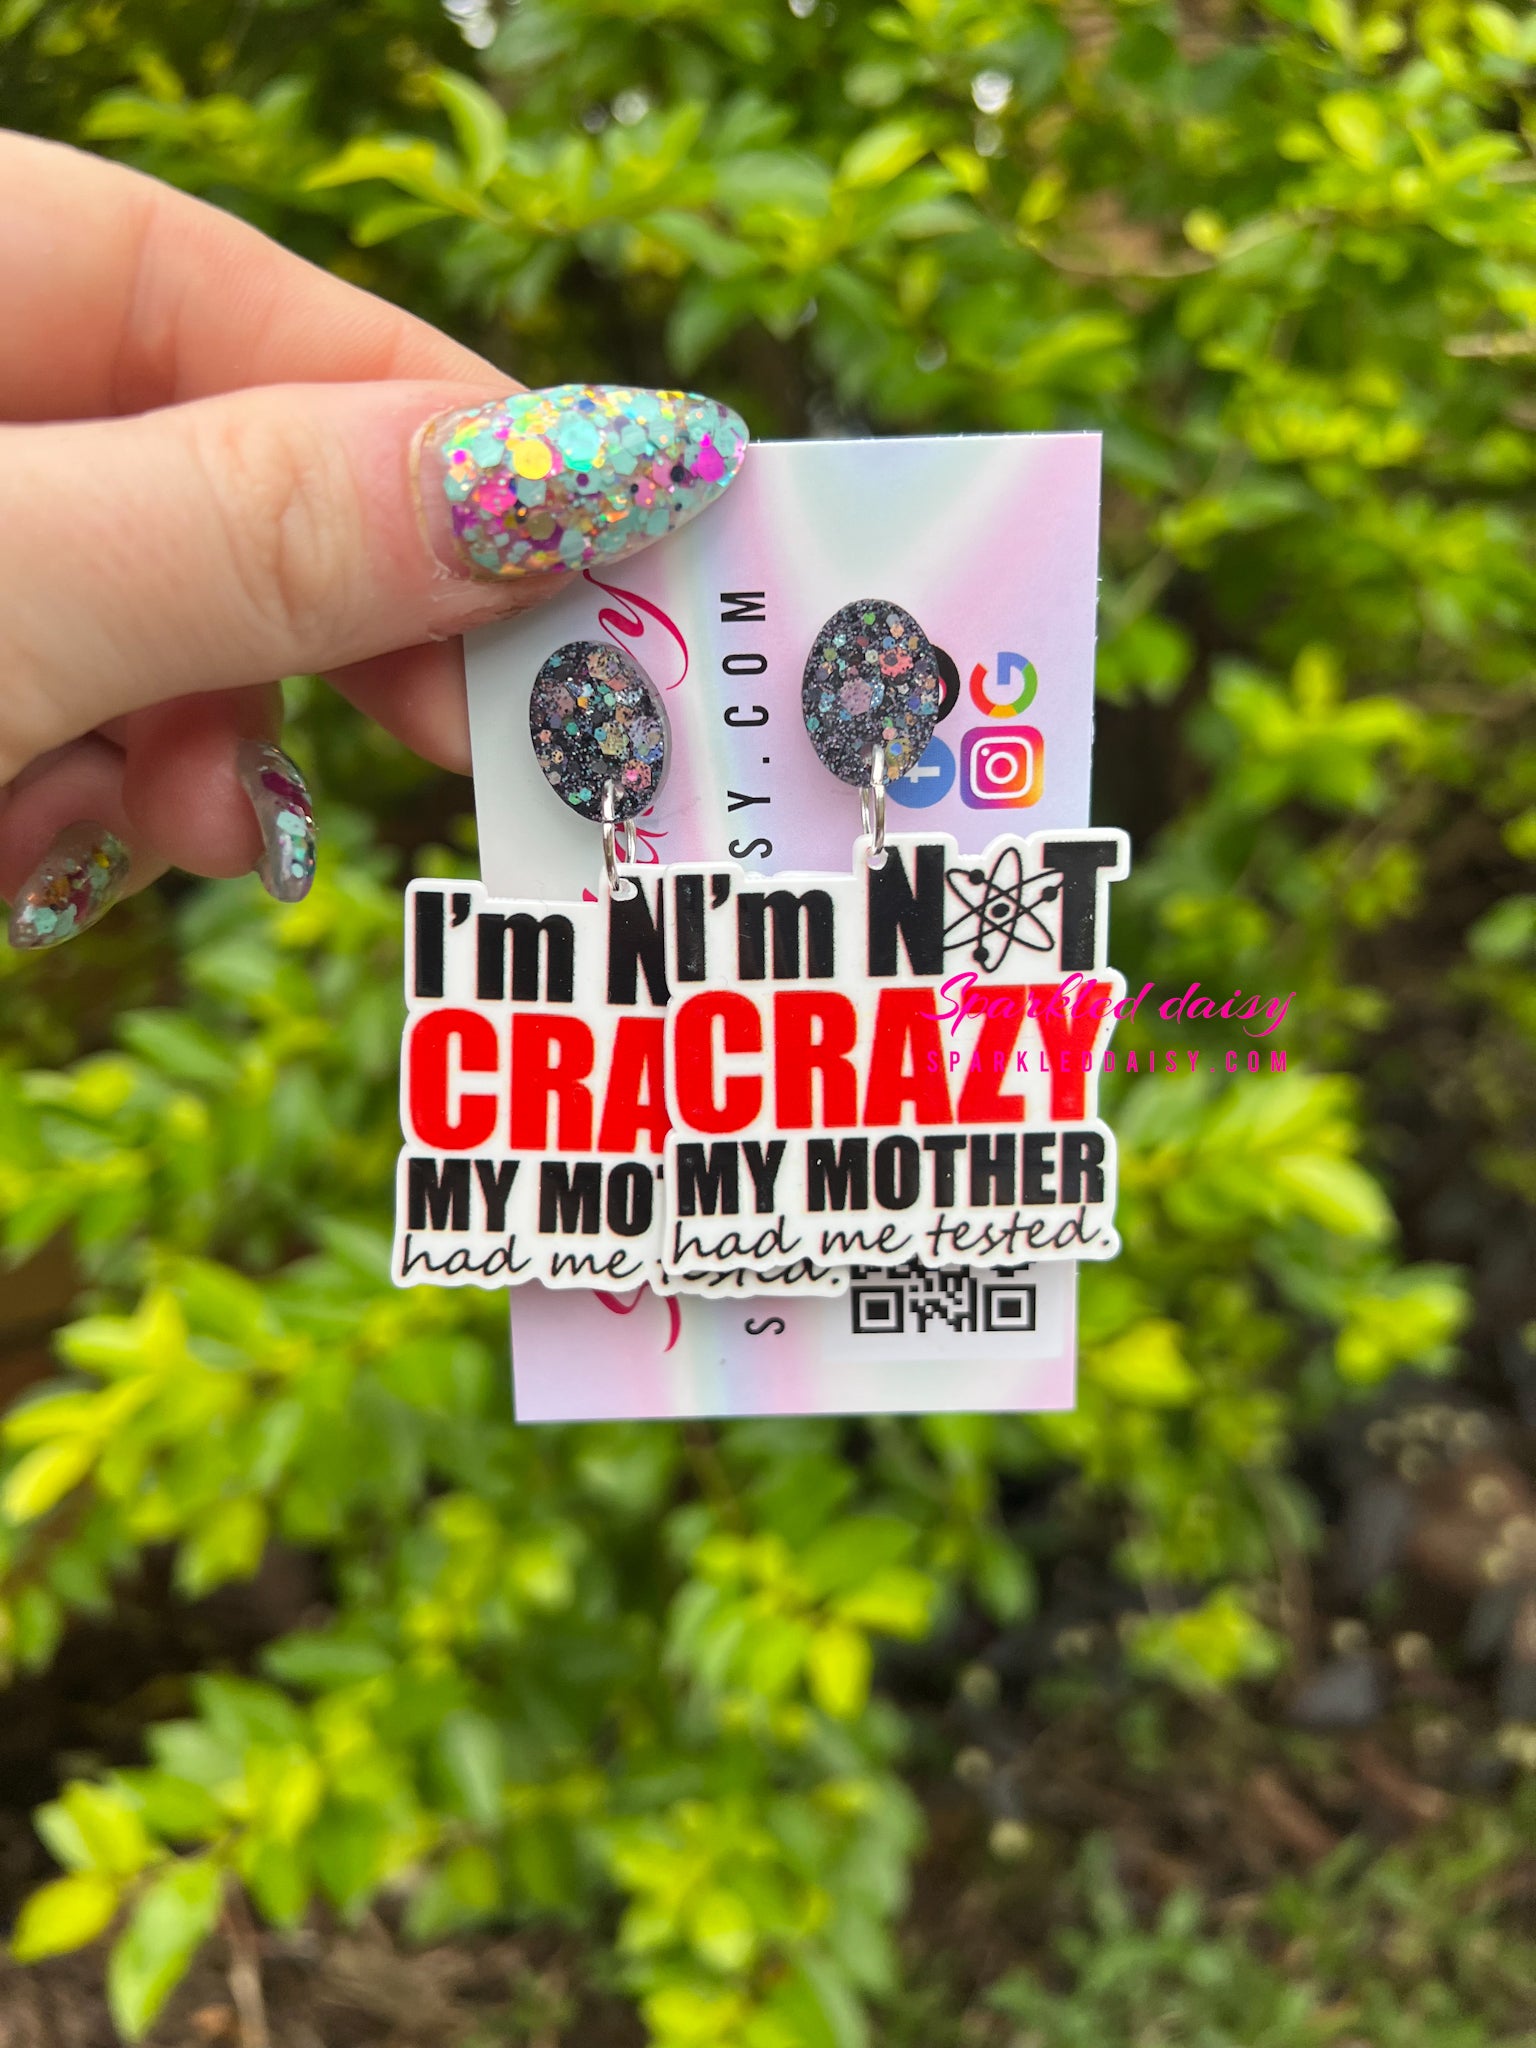 I’m not crazy